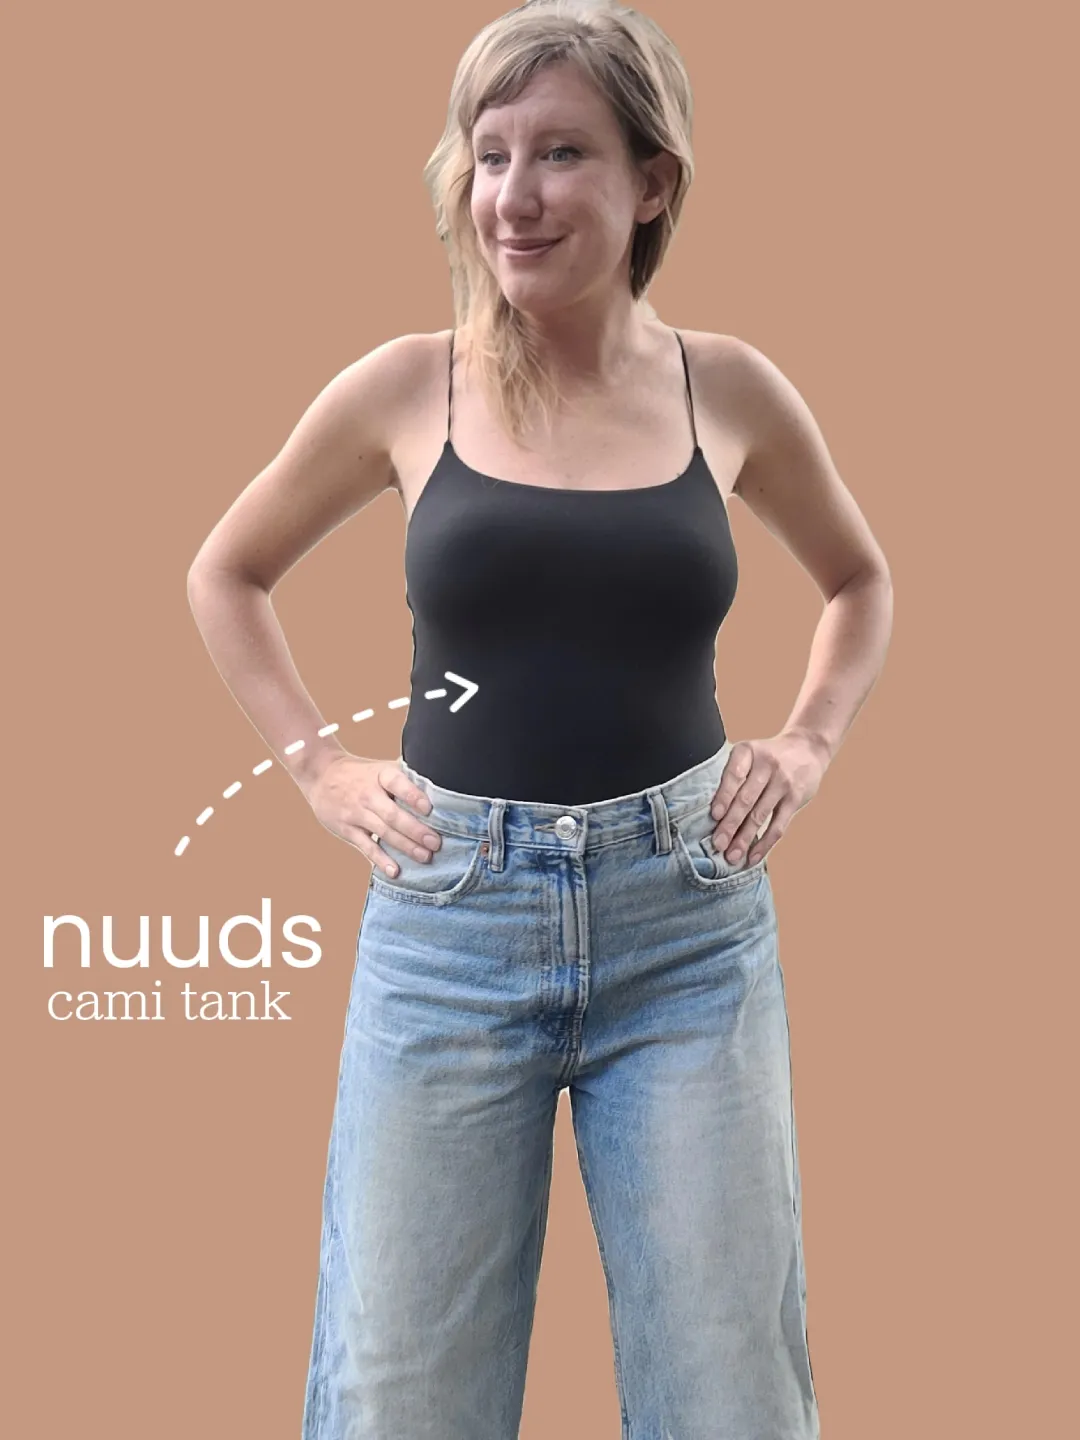 nuuds cami bodysuit, Gallery posted by Krystal Kotesky